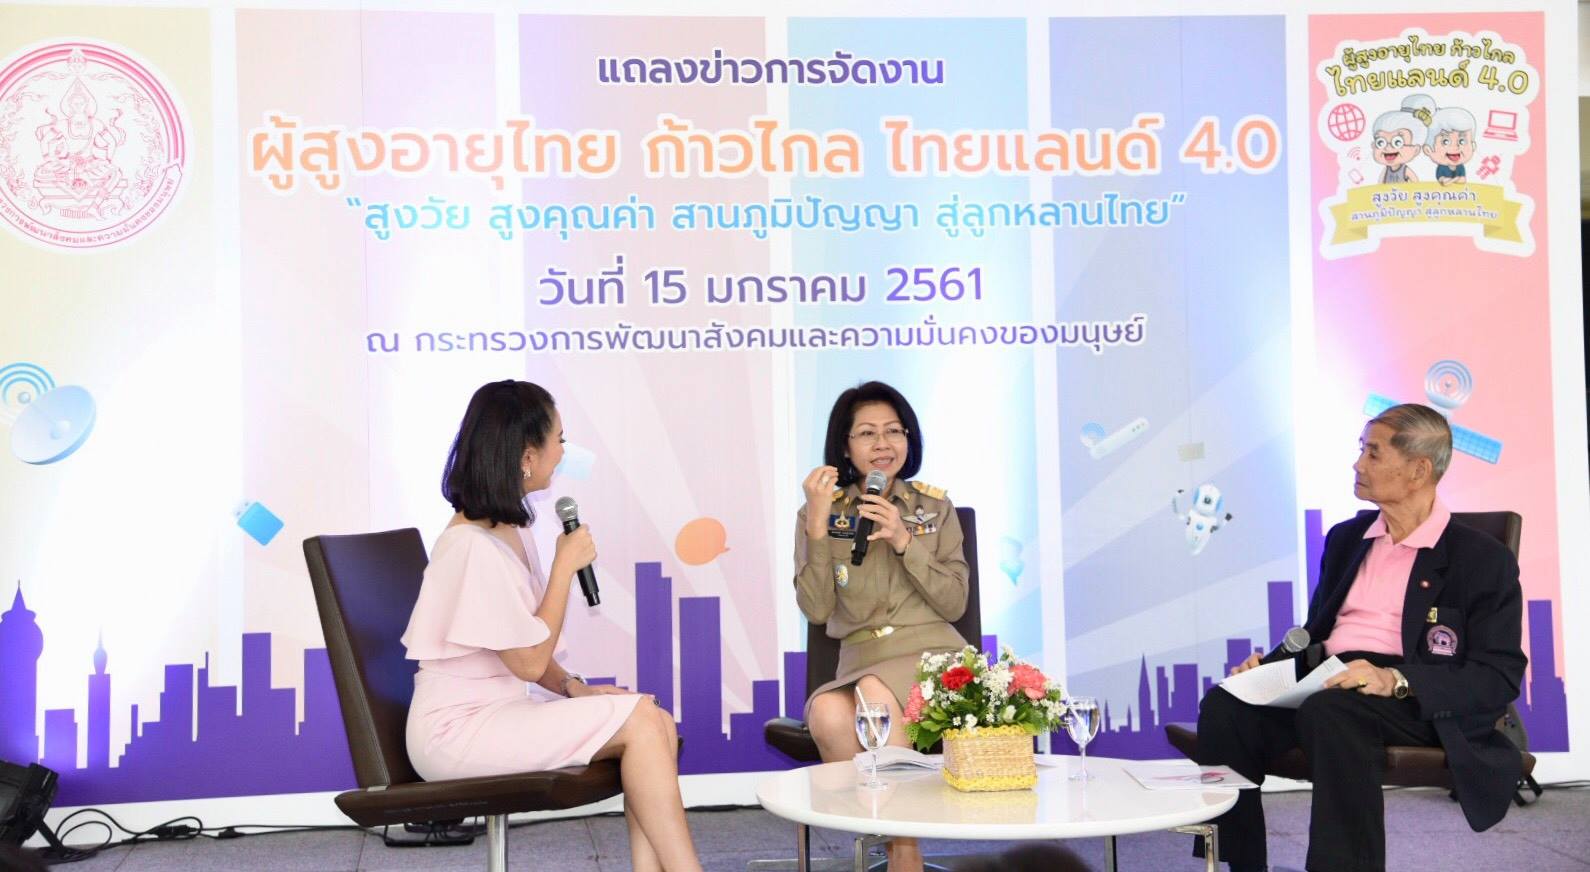 งานแถลงข่าวโครงการ “ผู้สูงอายุไทย ก้าวไกล ไทยแลนด์ 4.0